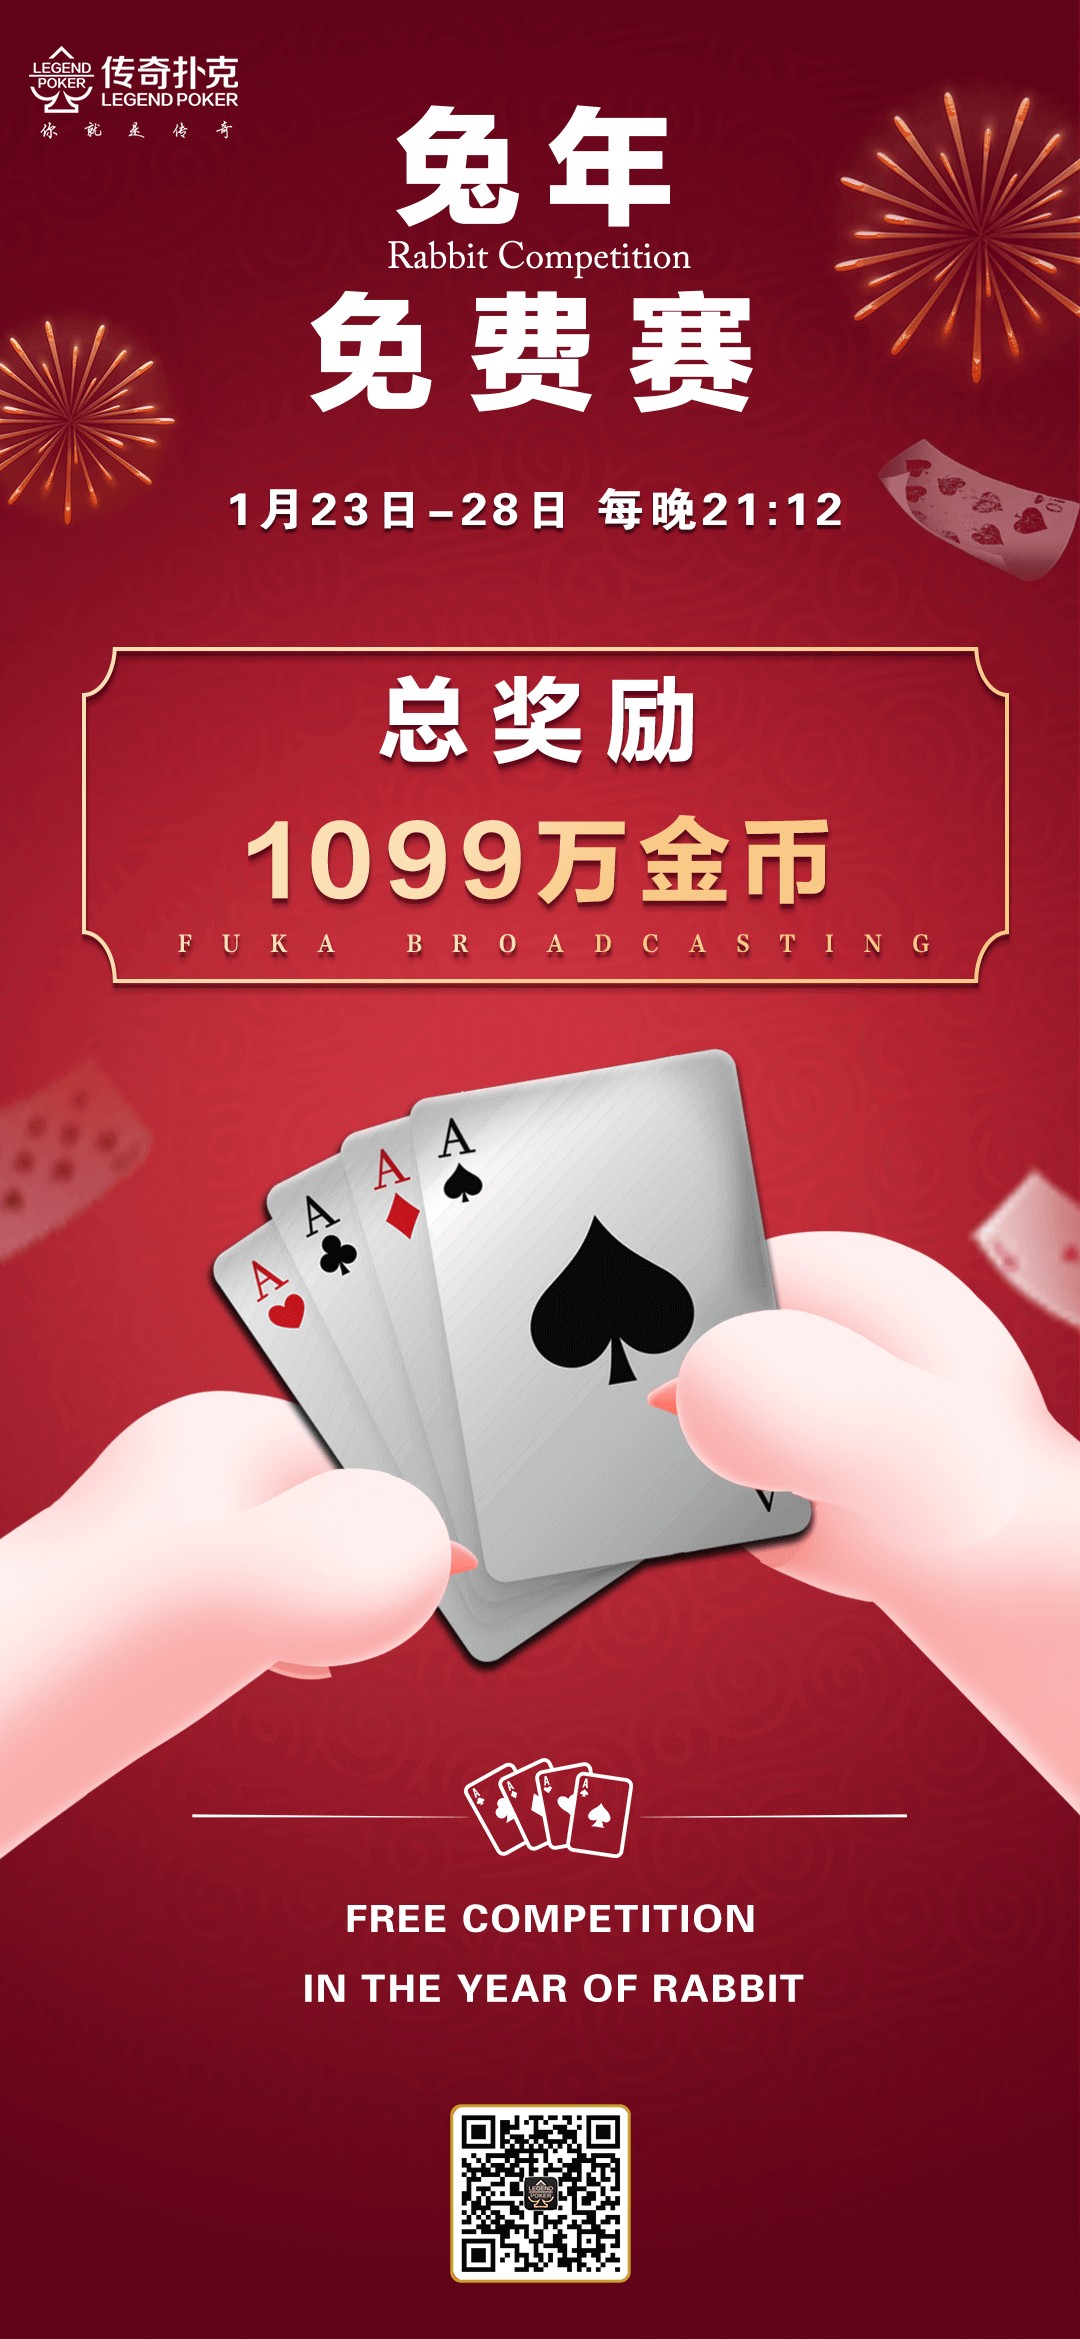 传奇扑克APP兔年免费赛-每场奖励1099万金币